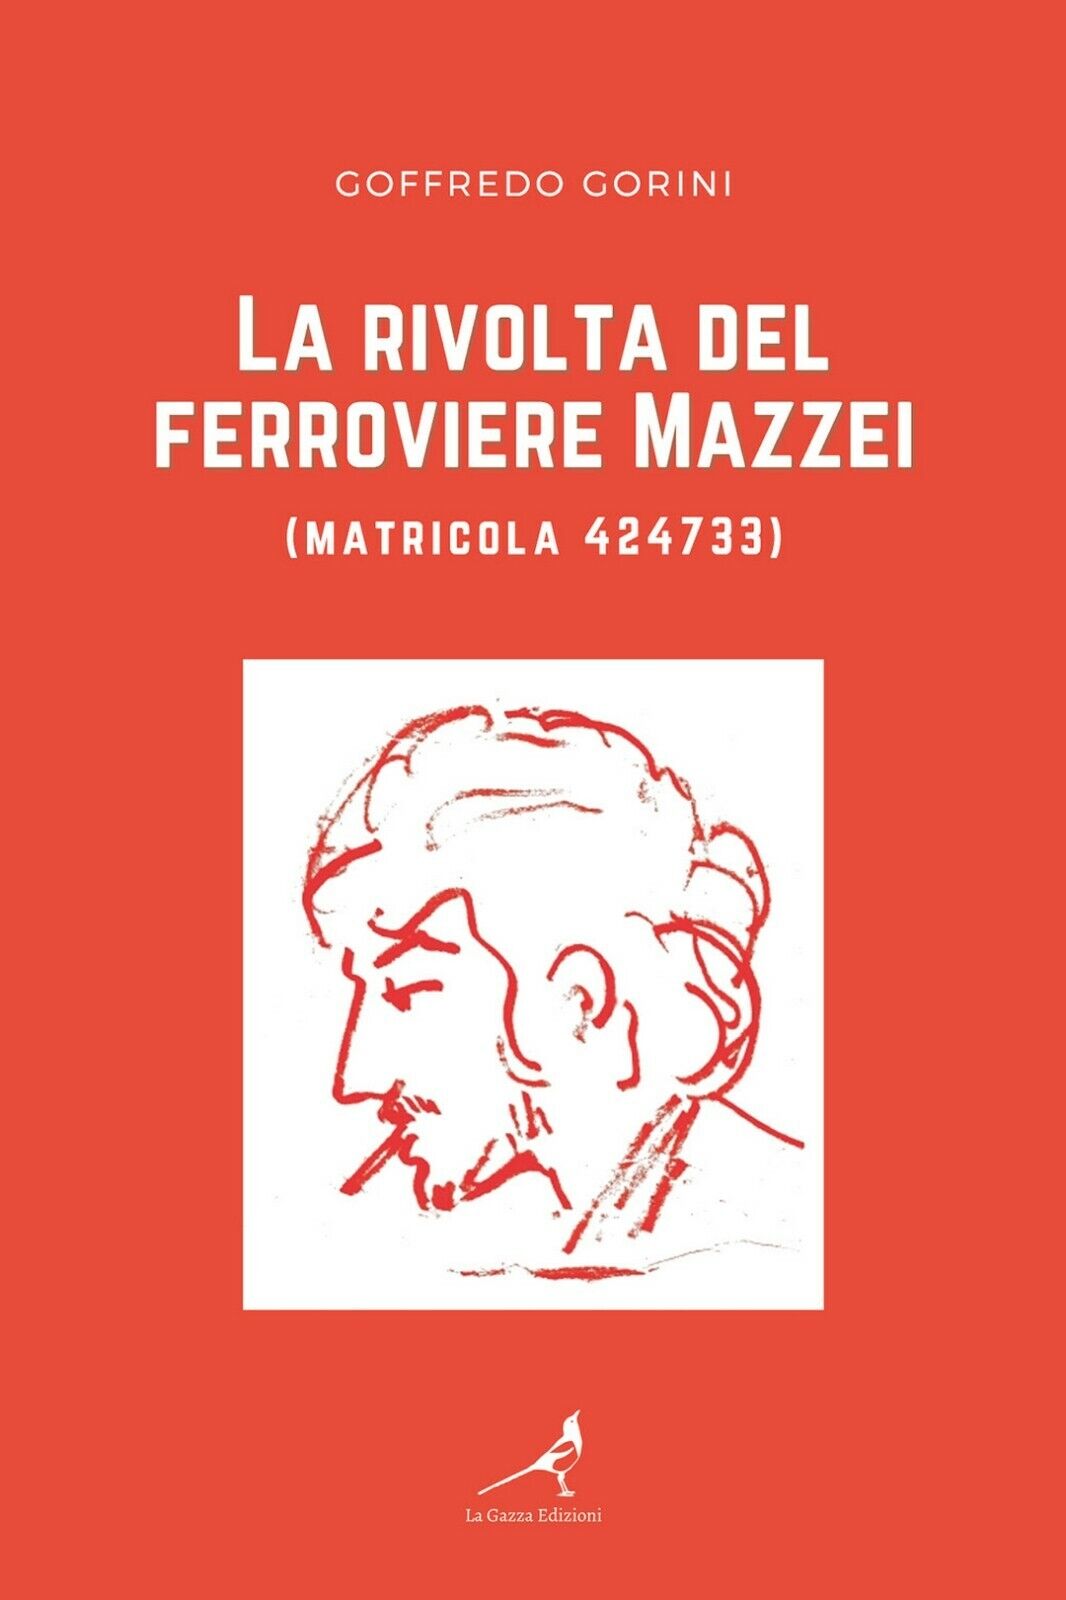 La rivolta del ferroviere Mazzei (matricola 424733)  di Goffredo Gorini,  2021